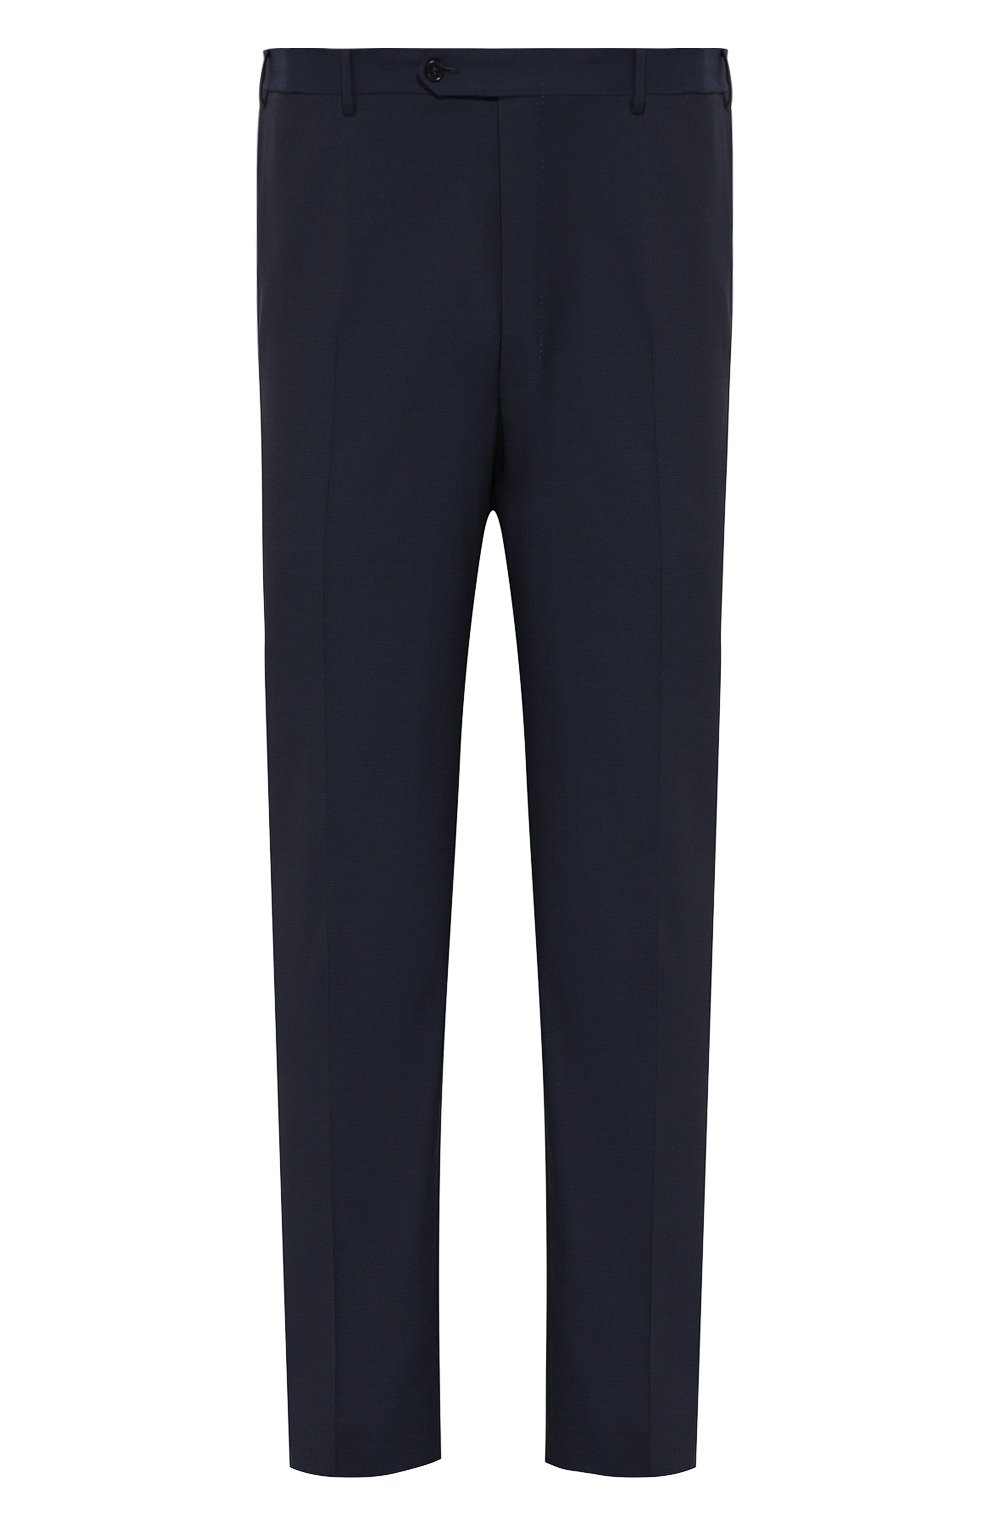 Мужские шерстяные брюки CANALI темно-синего цвета, арт. 71012/AT00552/60-64 | Фото 1 (Материал внешний: Шерсть; Big photo: Big photo; Длина (брюки, джинсы): Стандартные; Стили: Классический; Случай: Формальный)